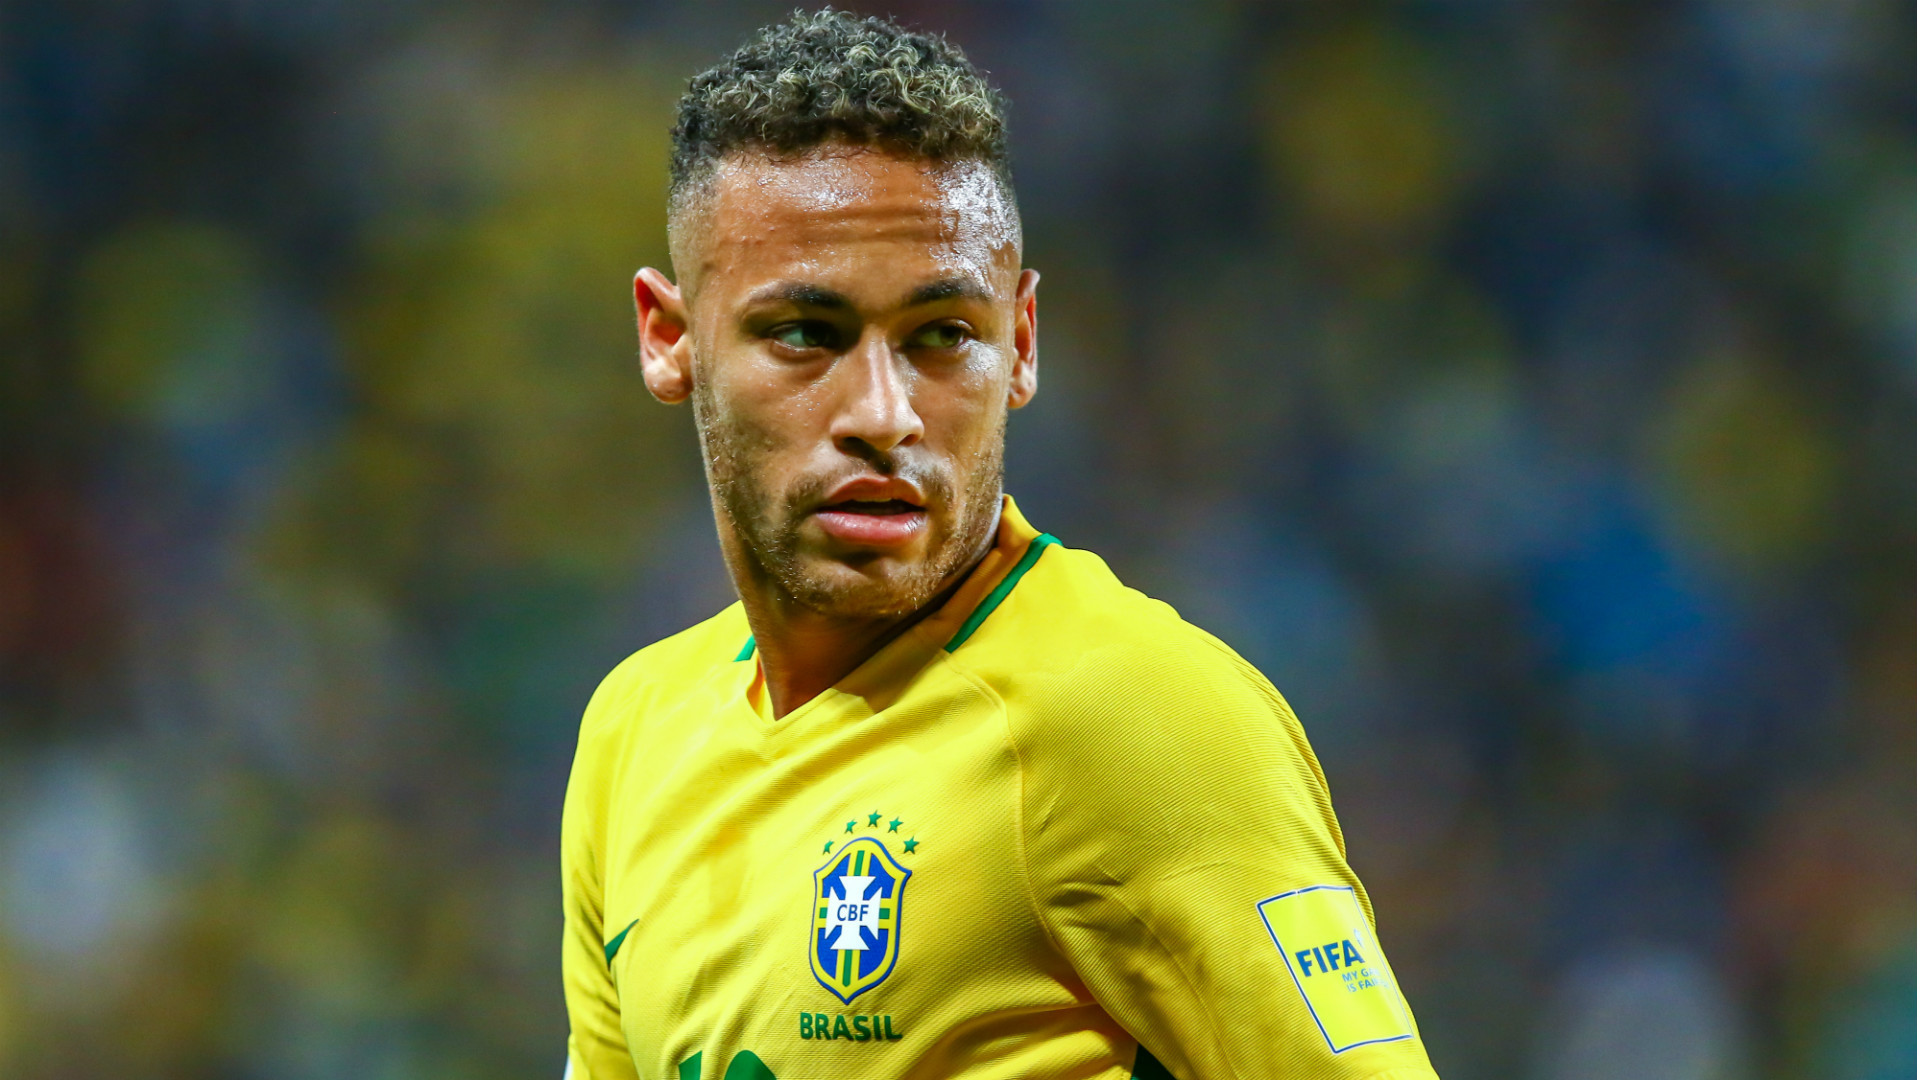 neymar hd wallpaper,player,football player,soccer player,team sport,sports equipment